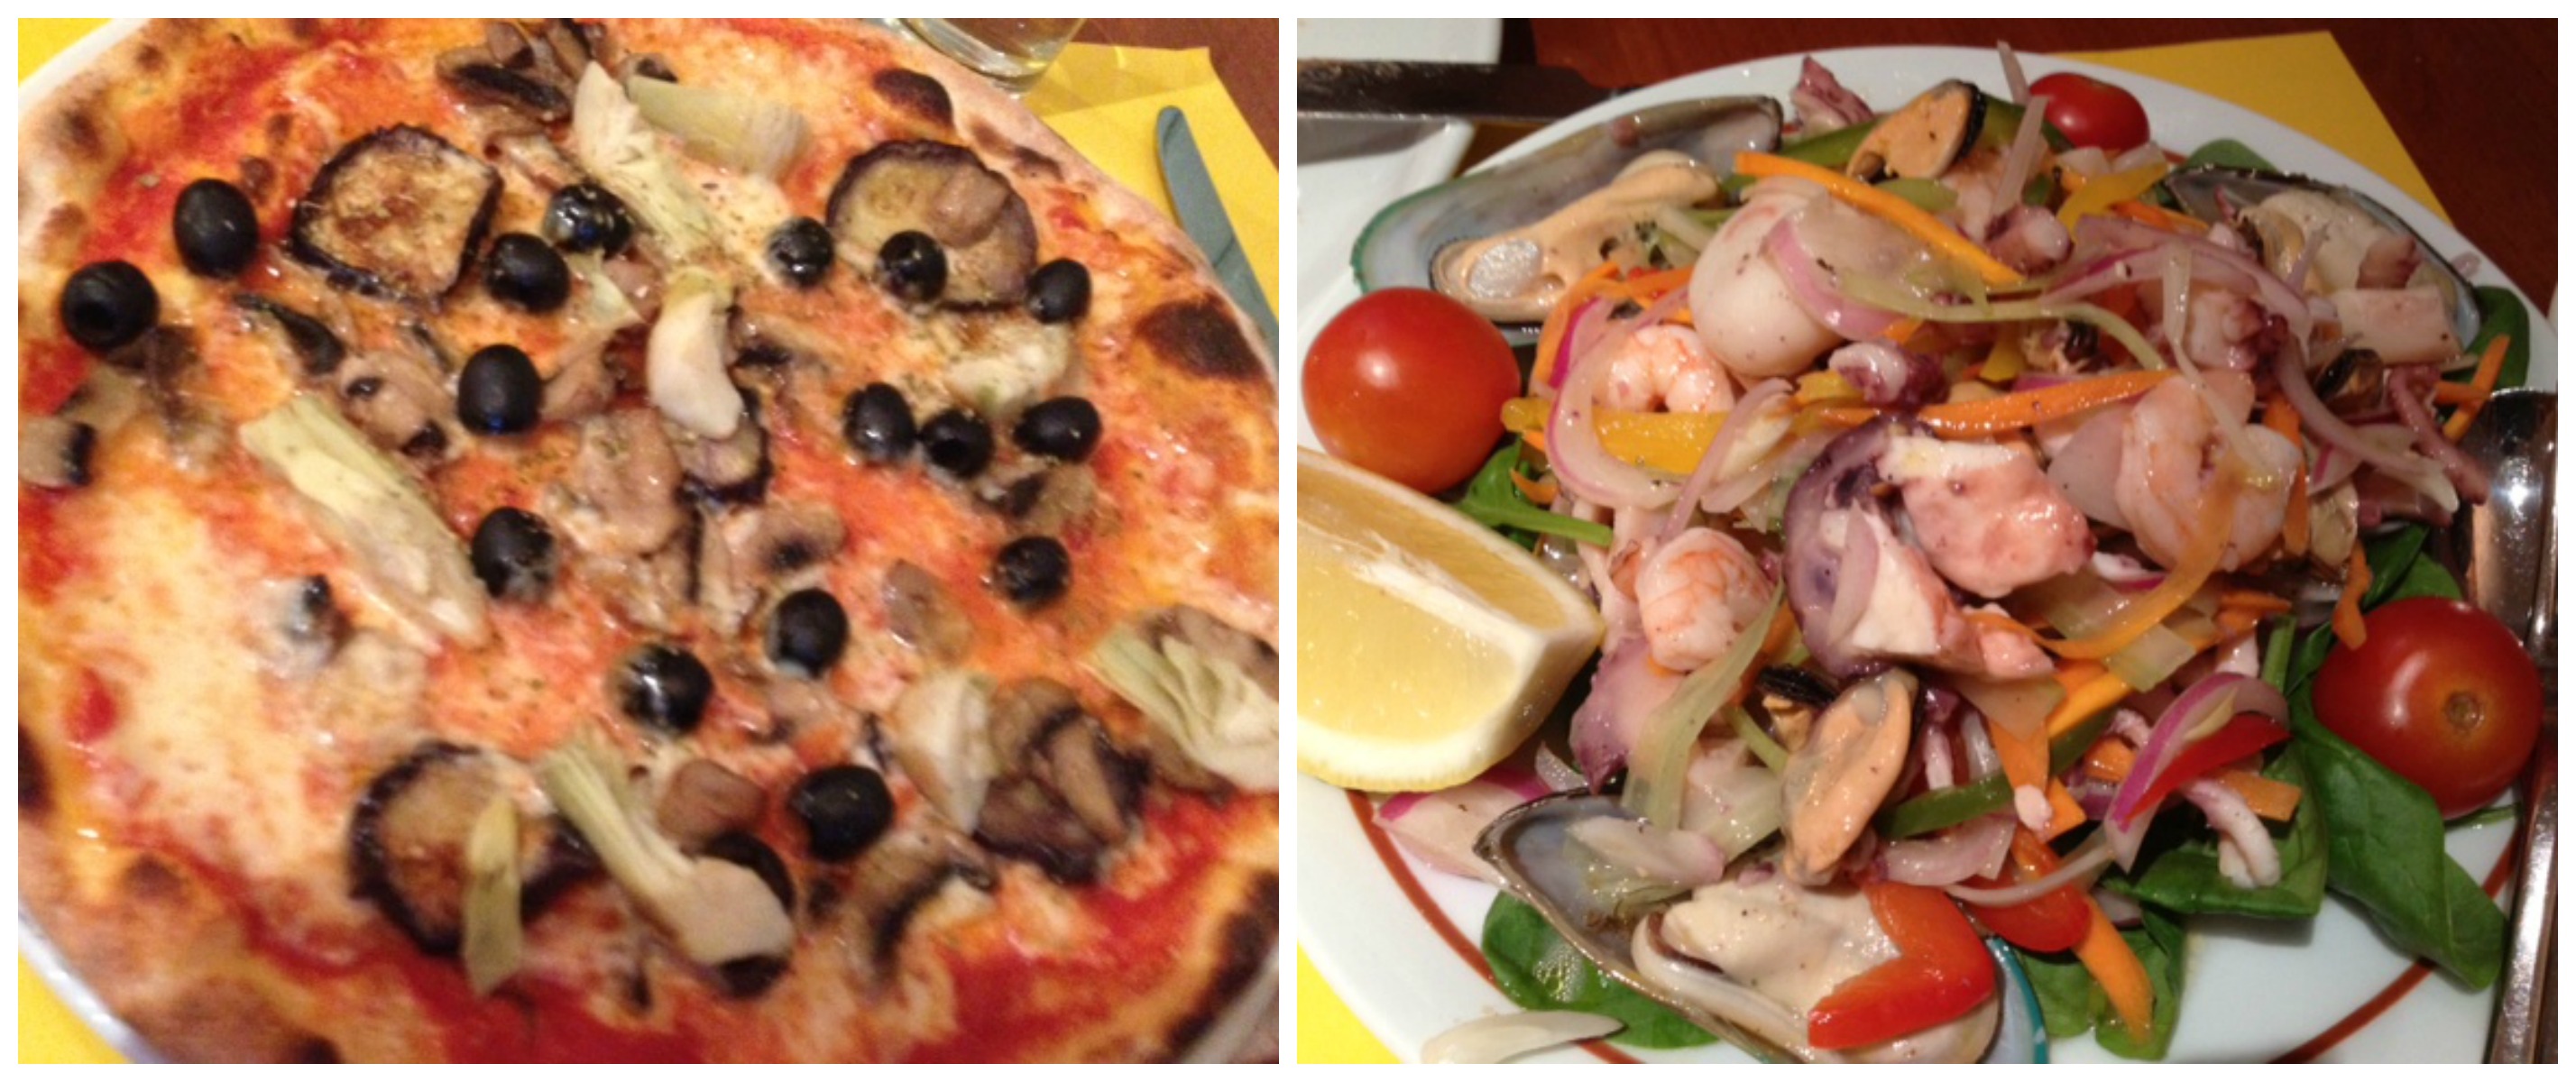 Veggie Pizza & Seafood Salad